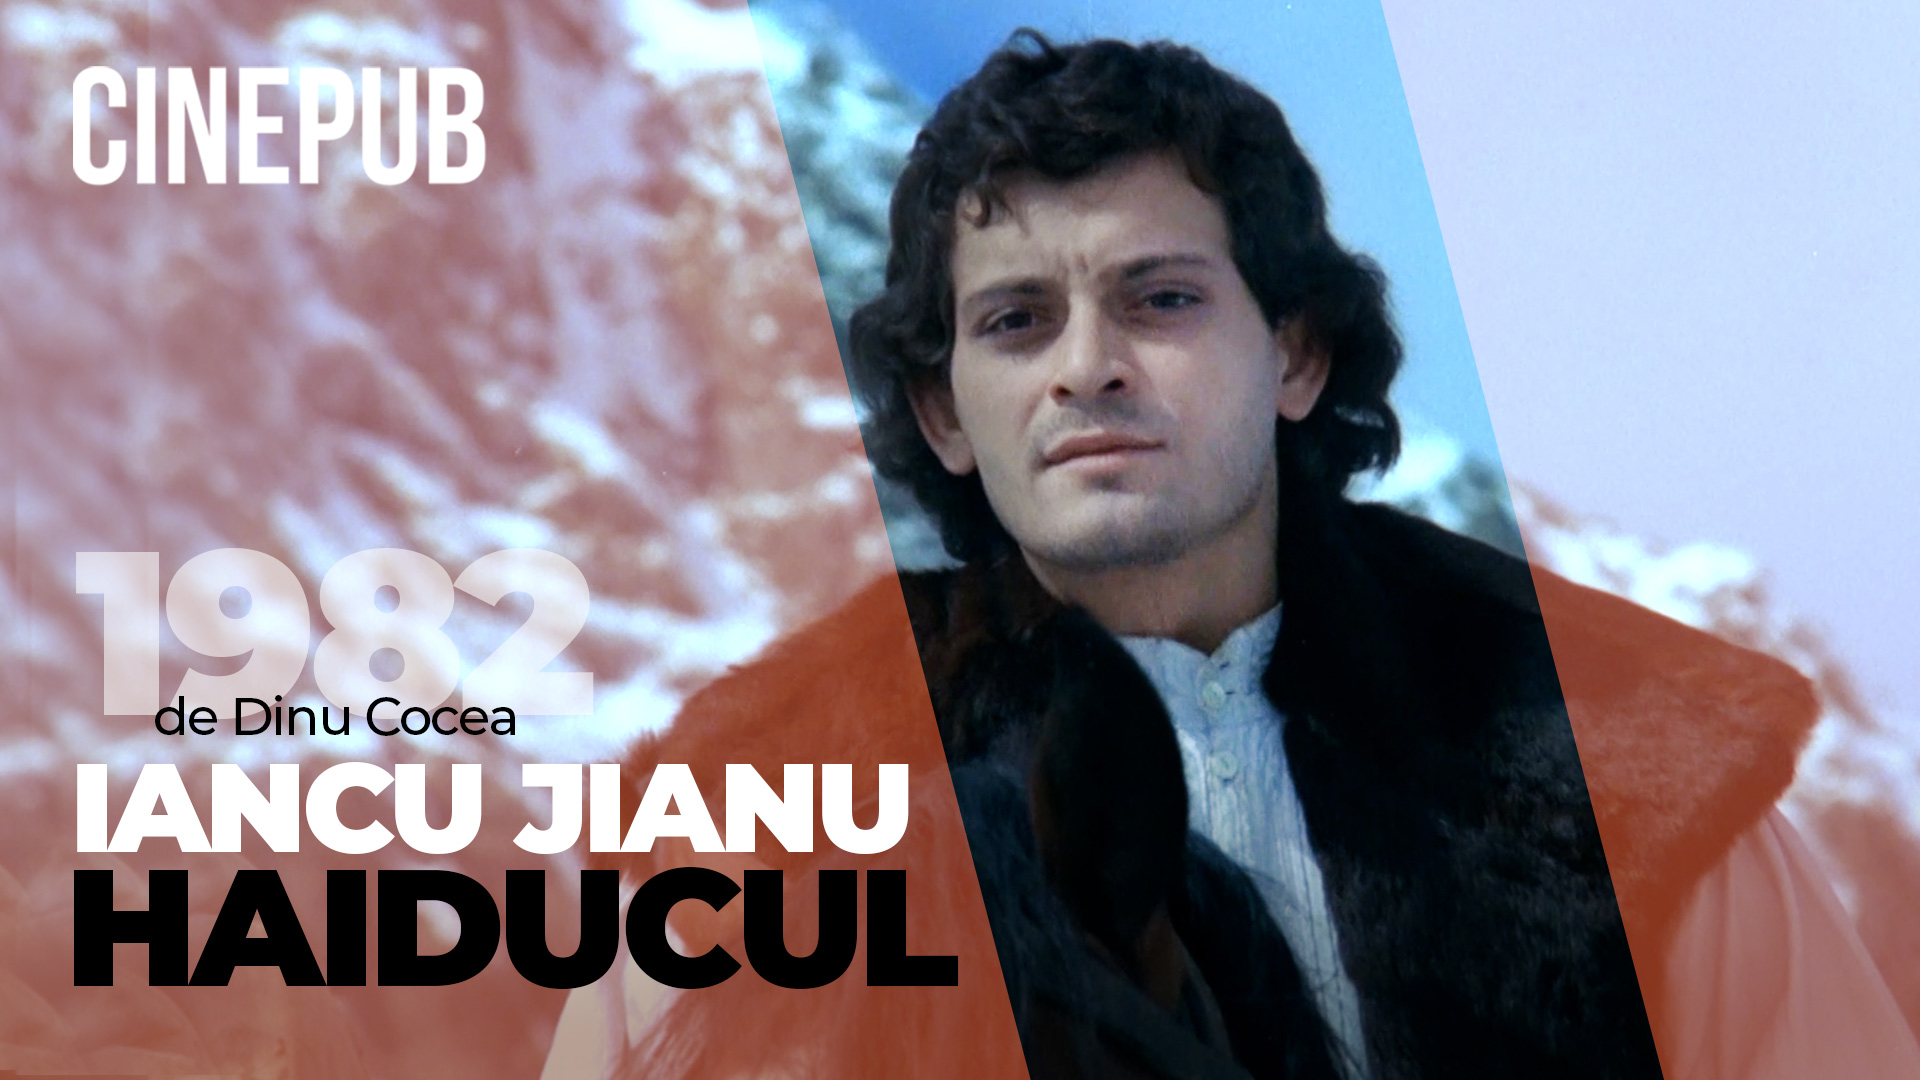 Iancu Jianu - Haiducul (1982) de Dinu Cocea - film istoric online pe CINEPUB